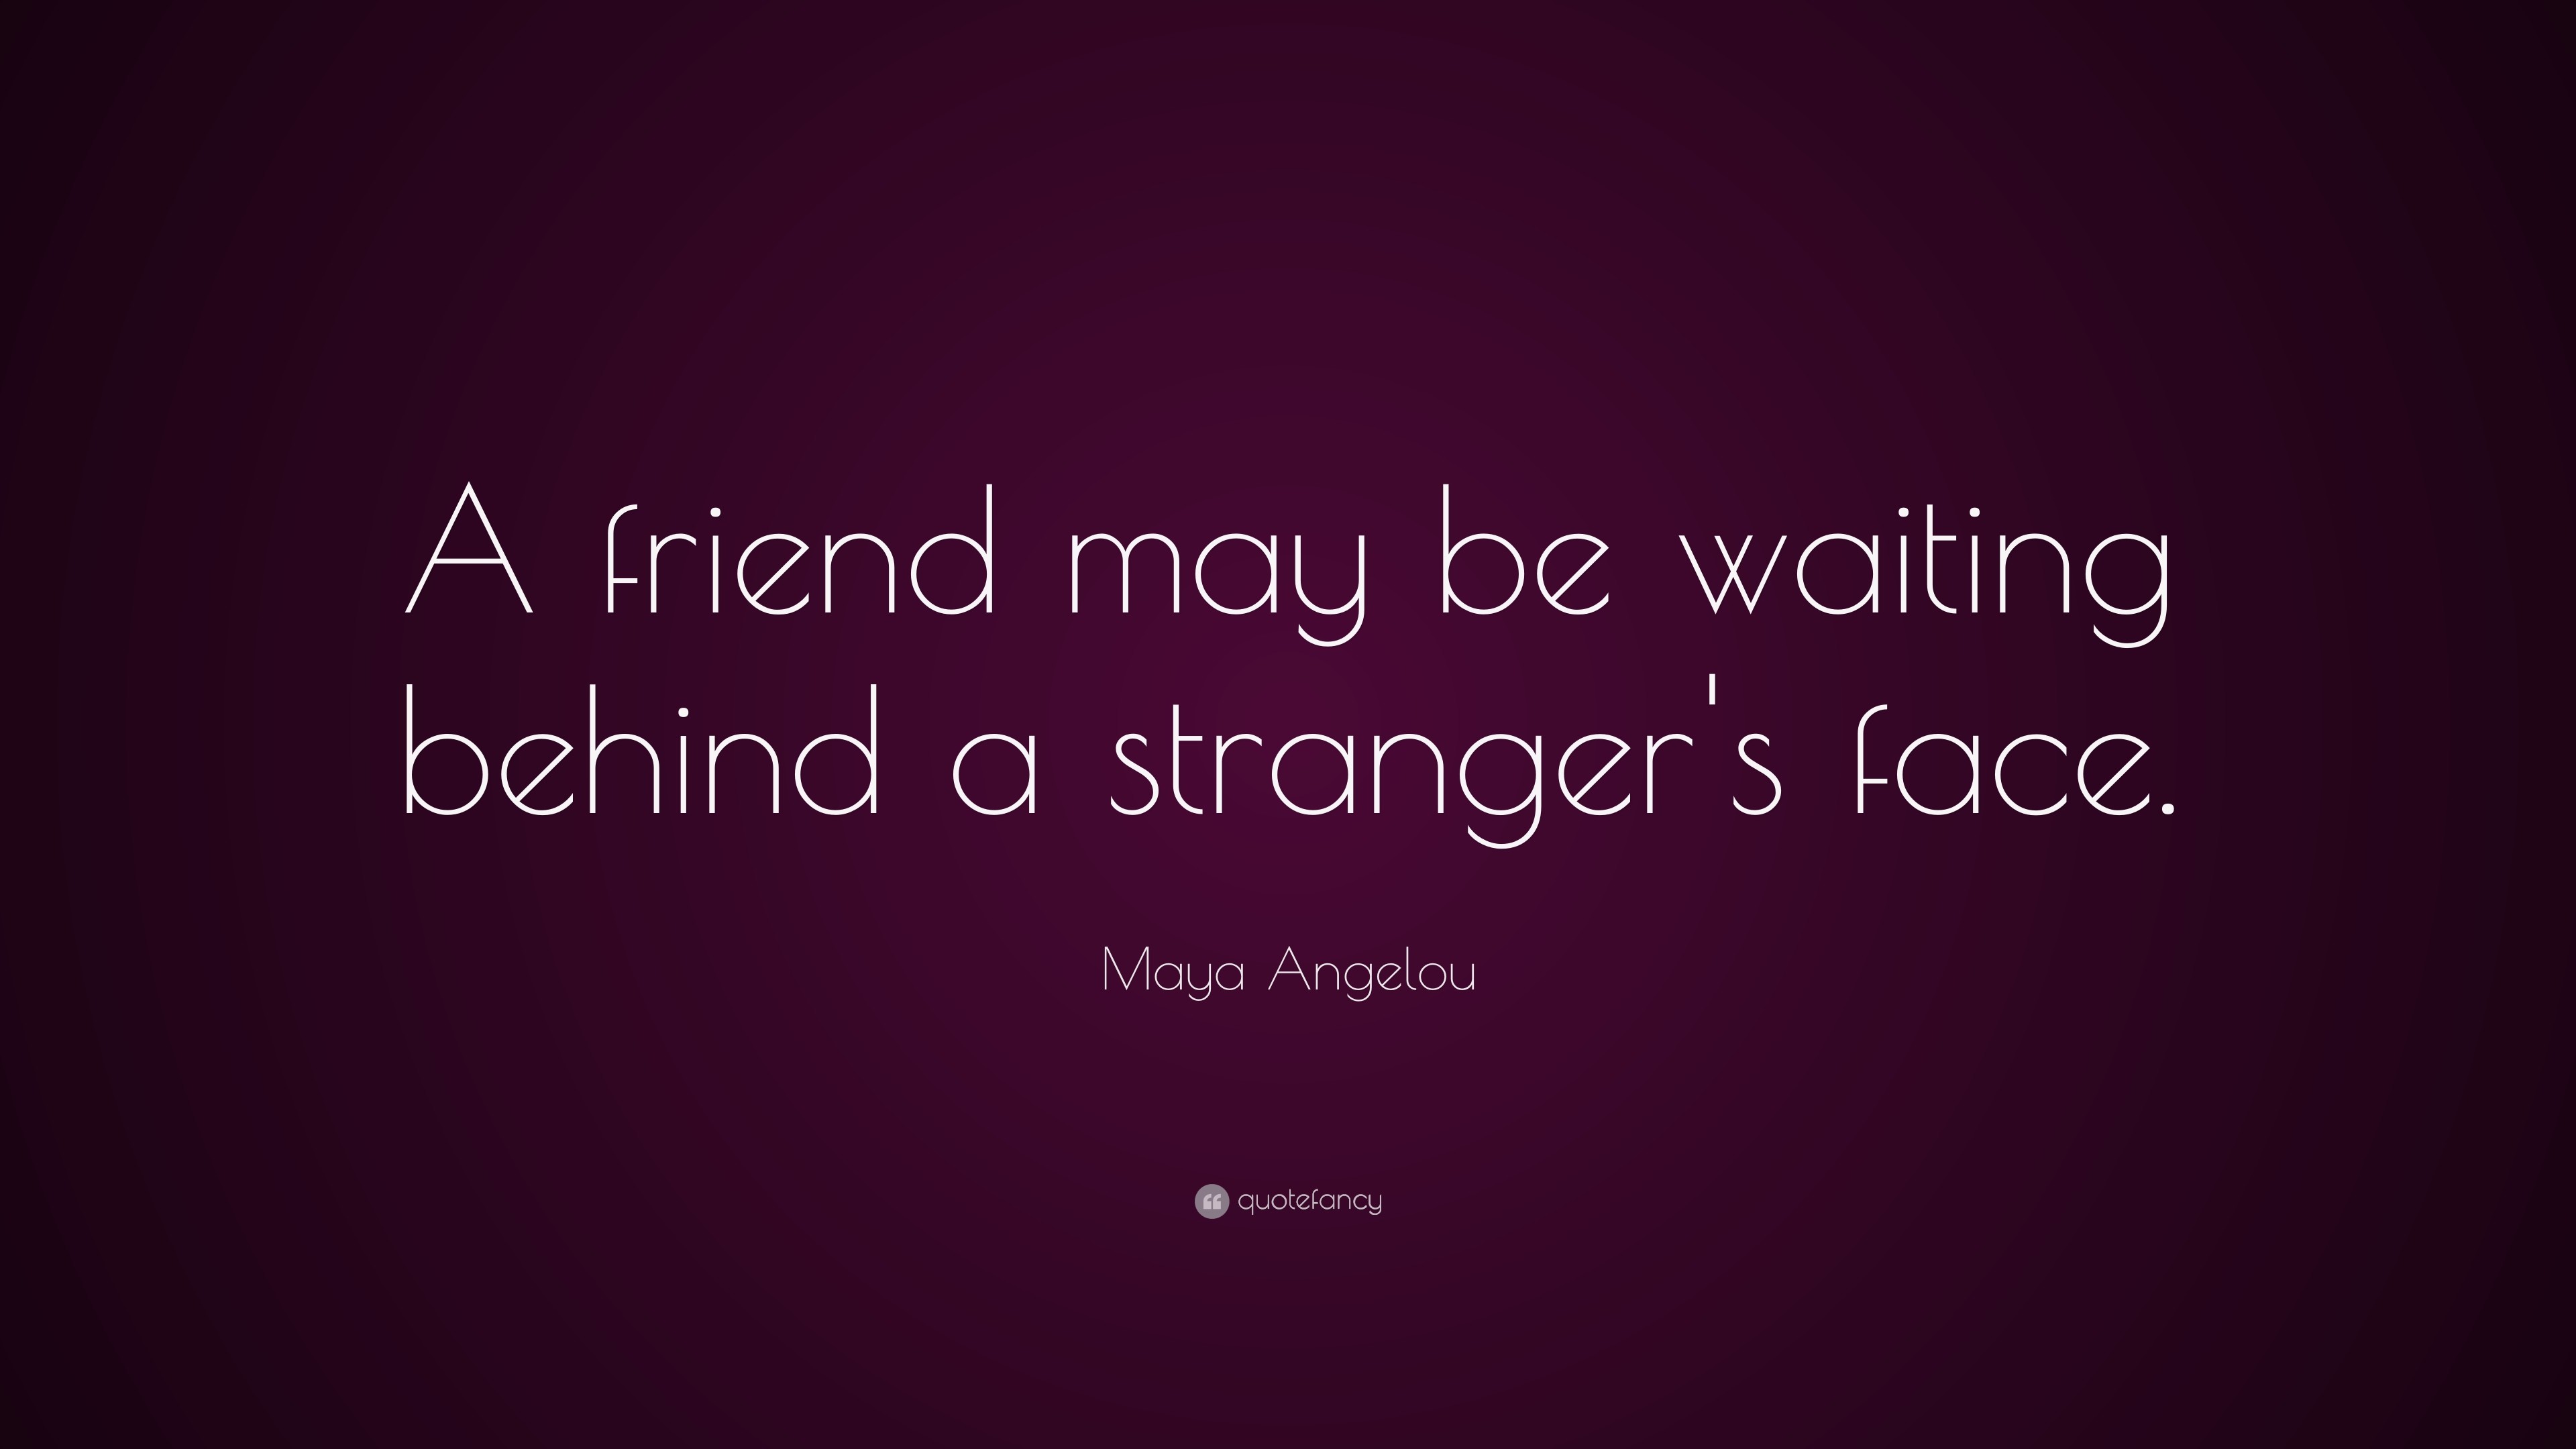 Ю май френд. Maya Angelou quote. Май френд. Quotes. May be waiting.